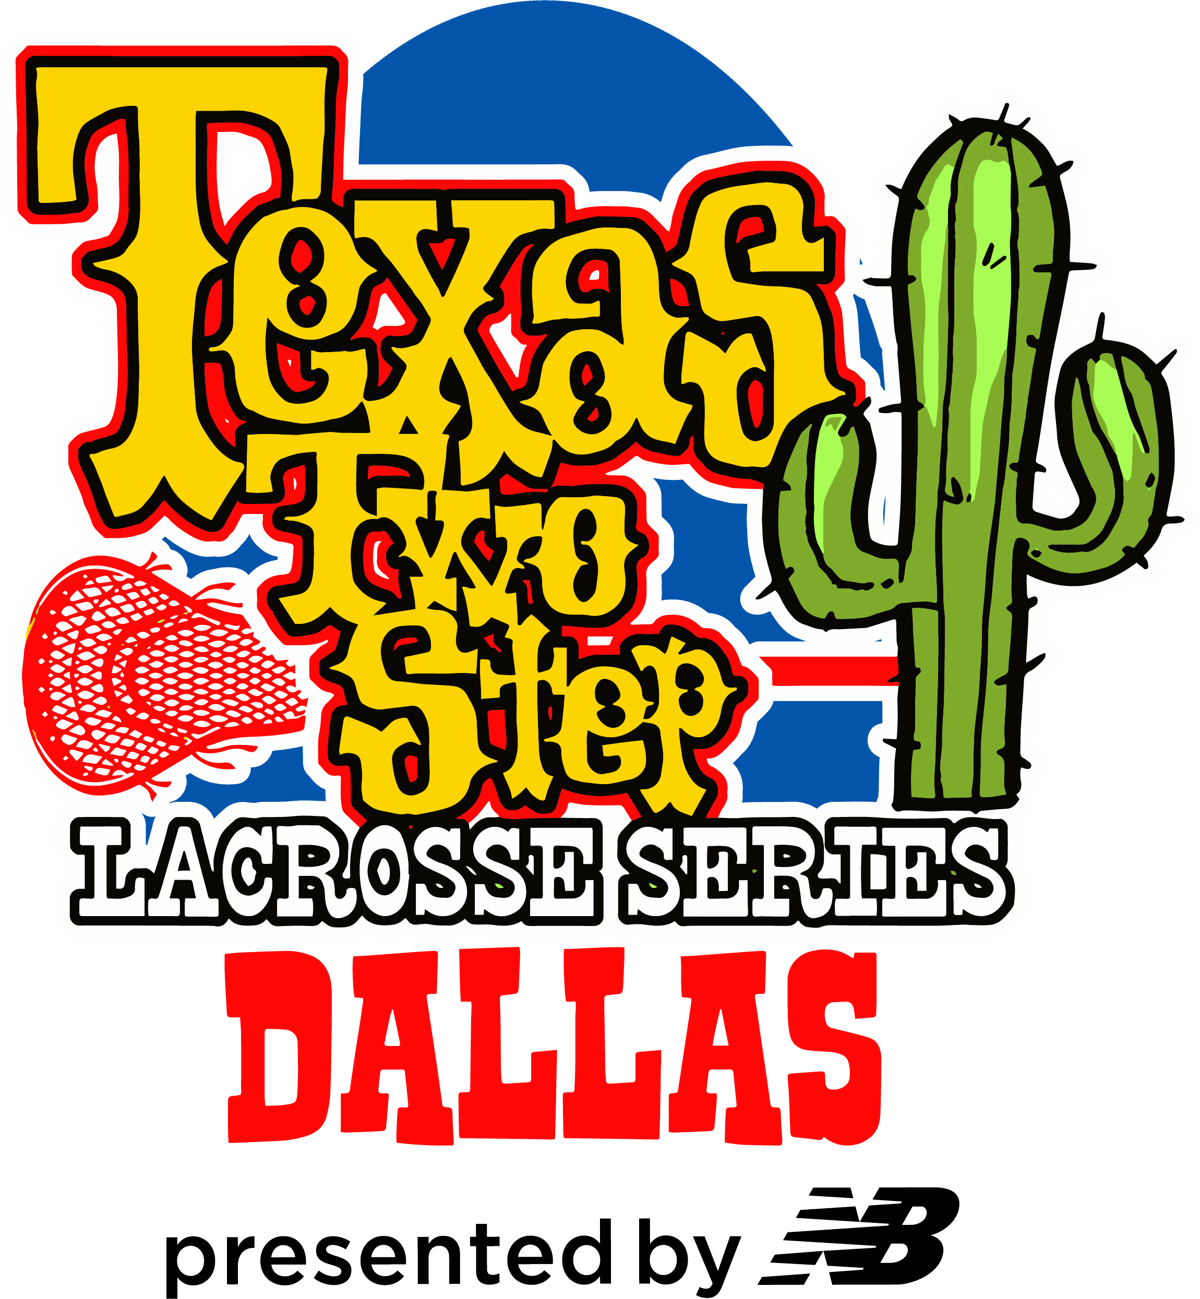 Texas Two-Step Dallas